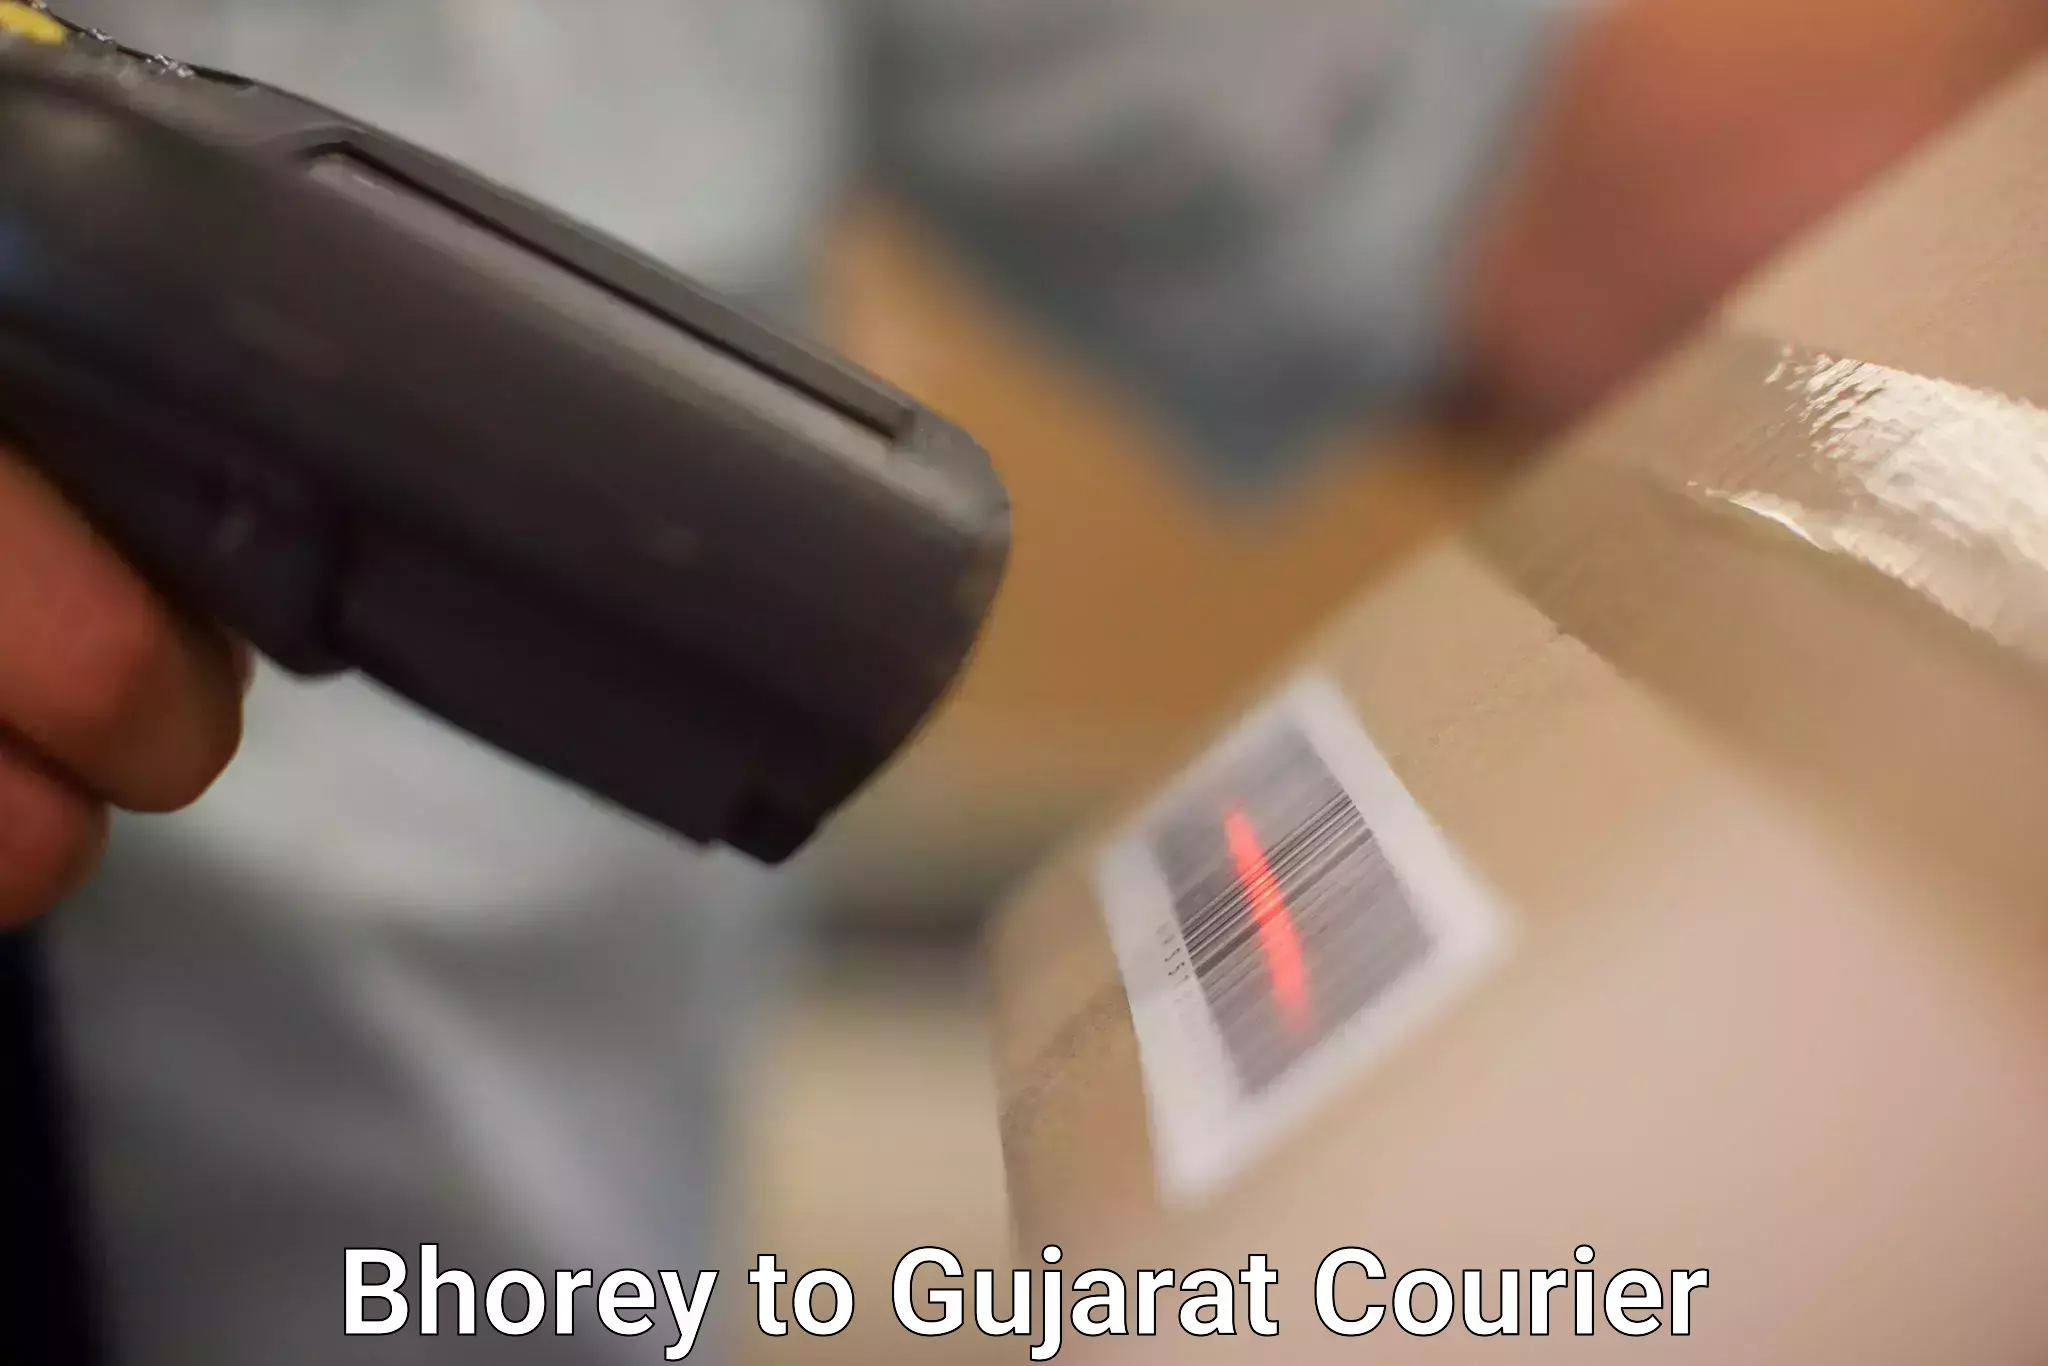 Seamless shipping experience Bhorey to Jhagadia